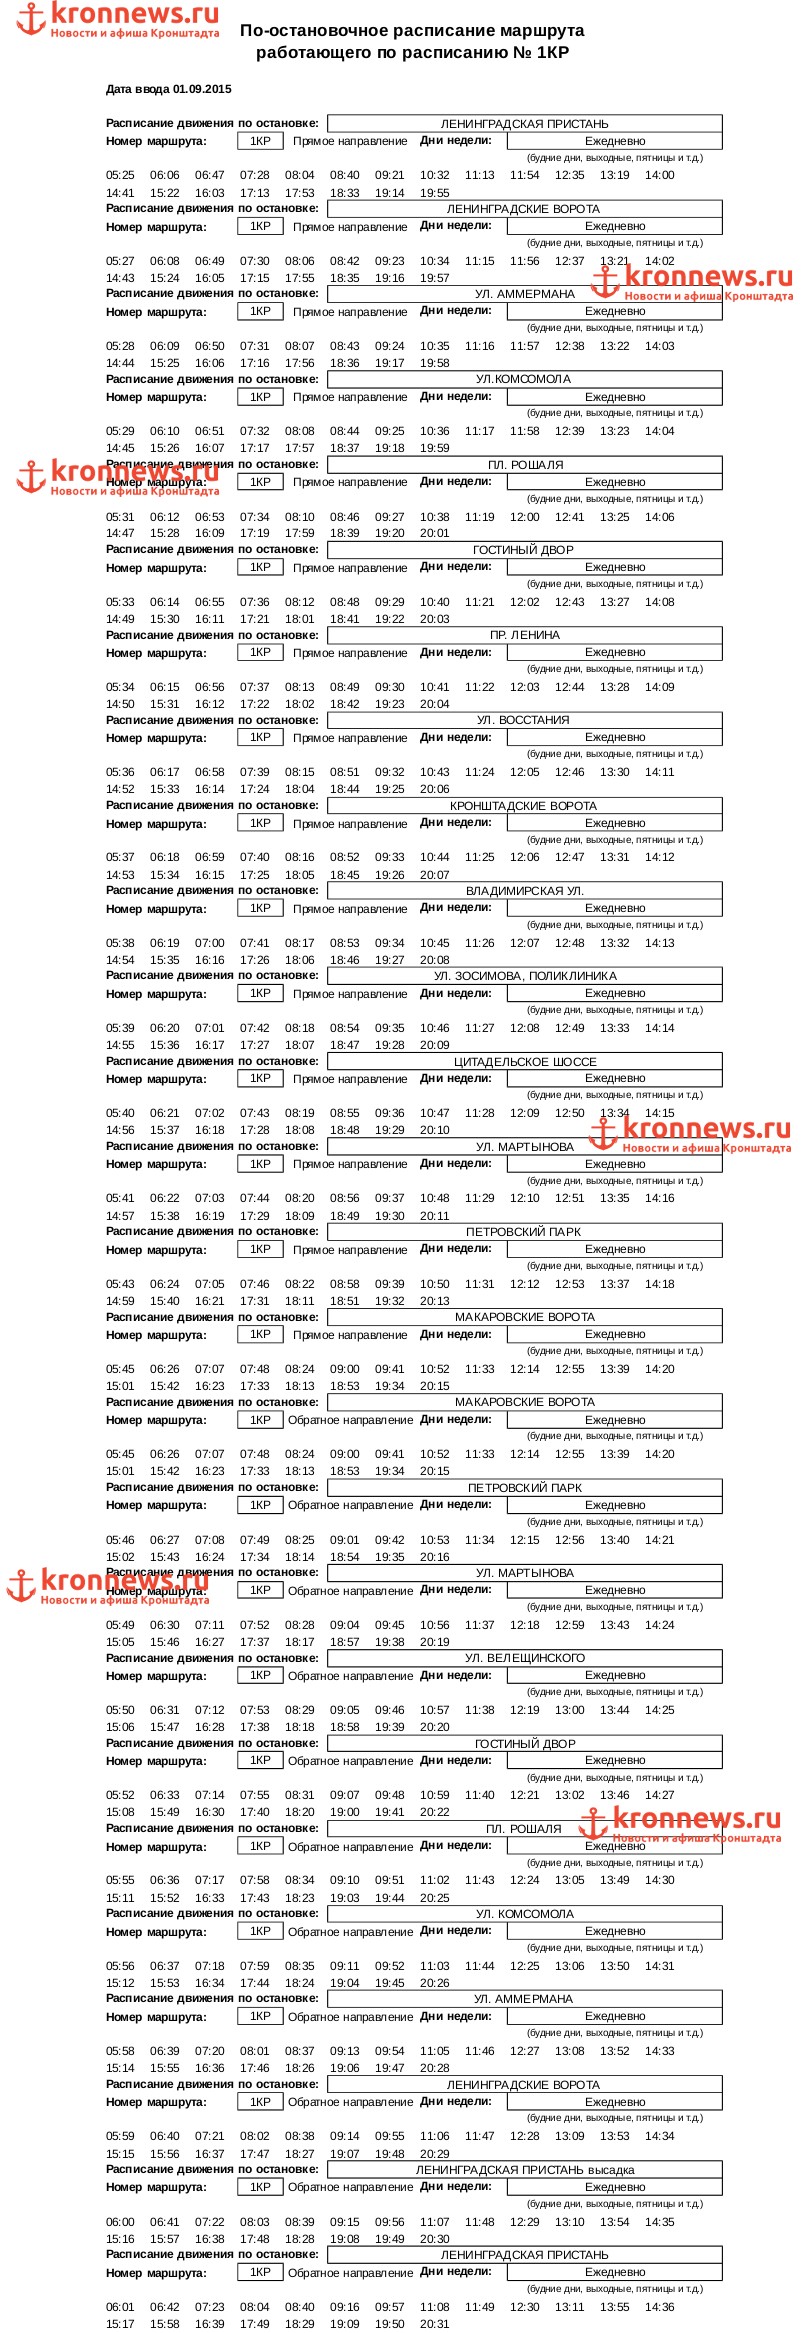 Расписания движения автобусов по маршруту № 1Кр (с 1 сентября 2015 года)